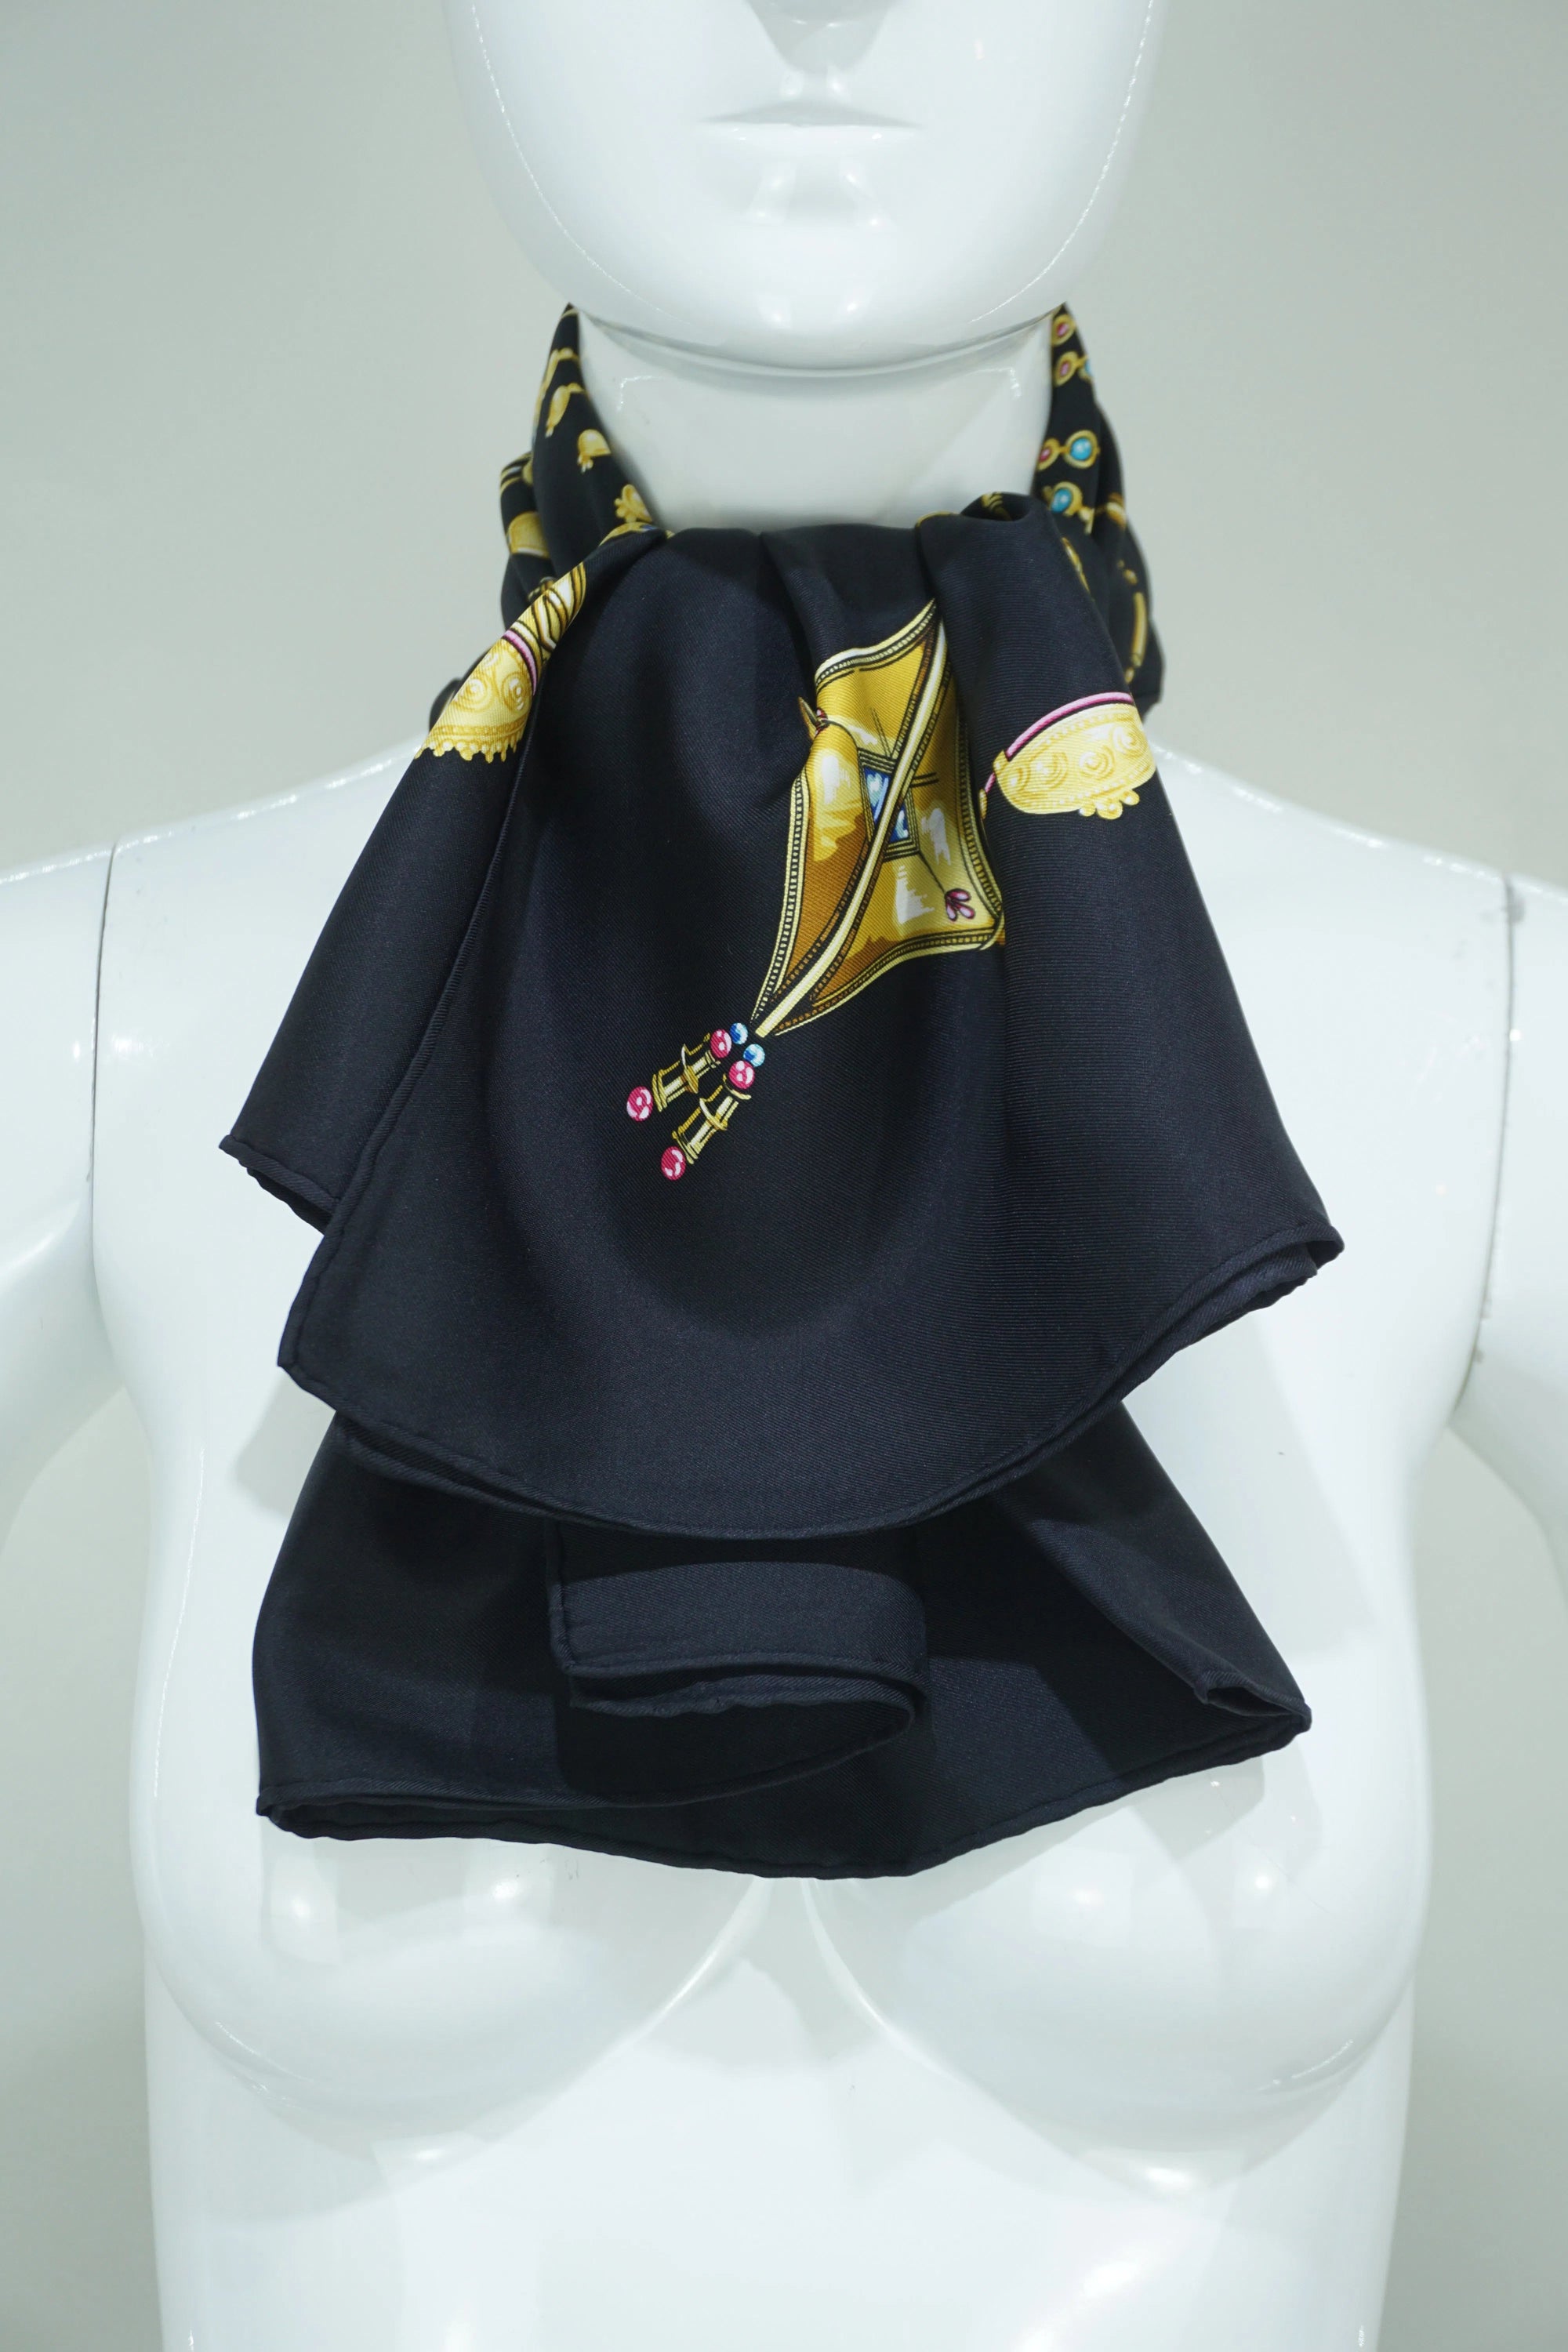 Hermès Parures Des Sables Black and Gold Silk Scarf 90cm